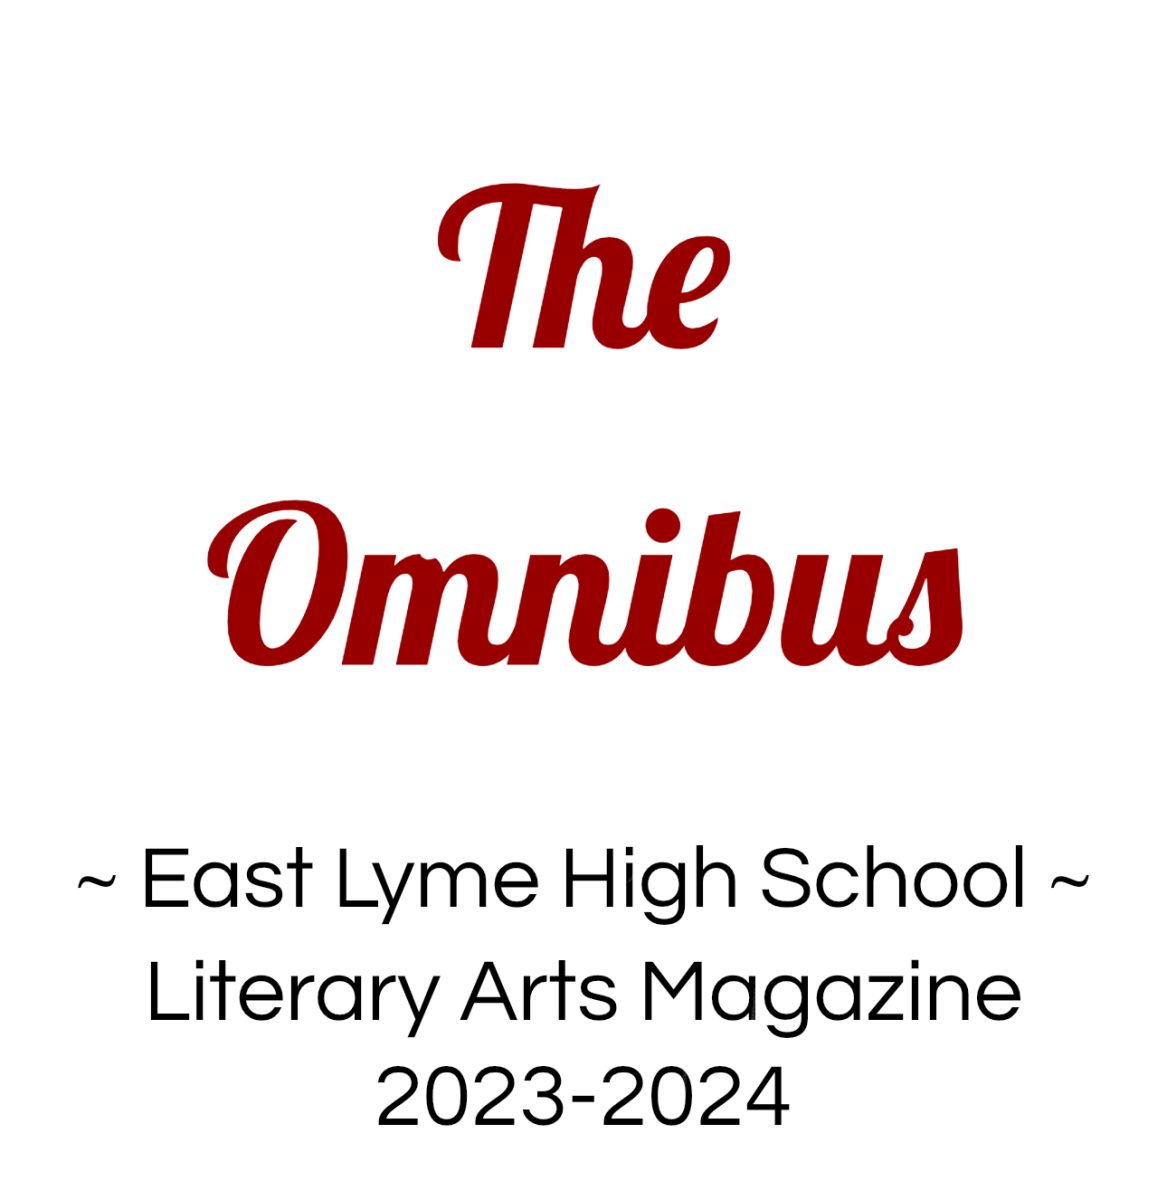 The Omnibus